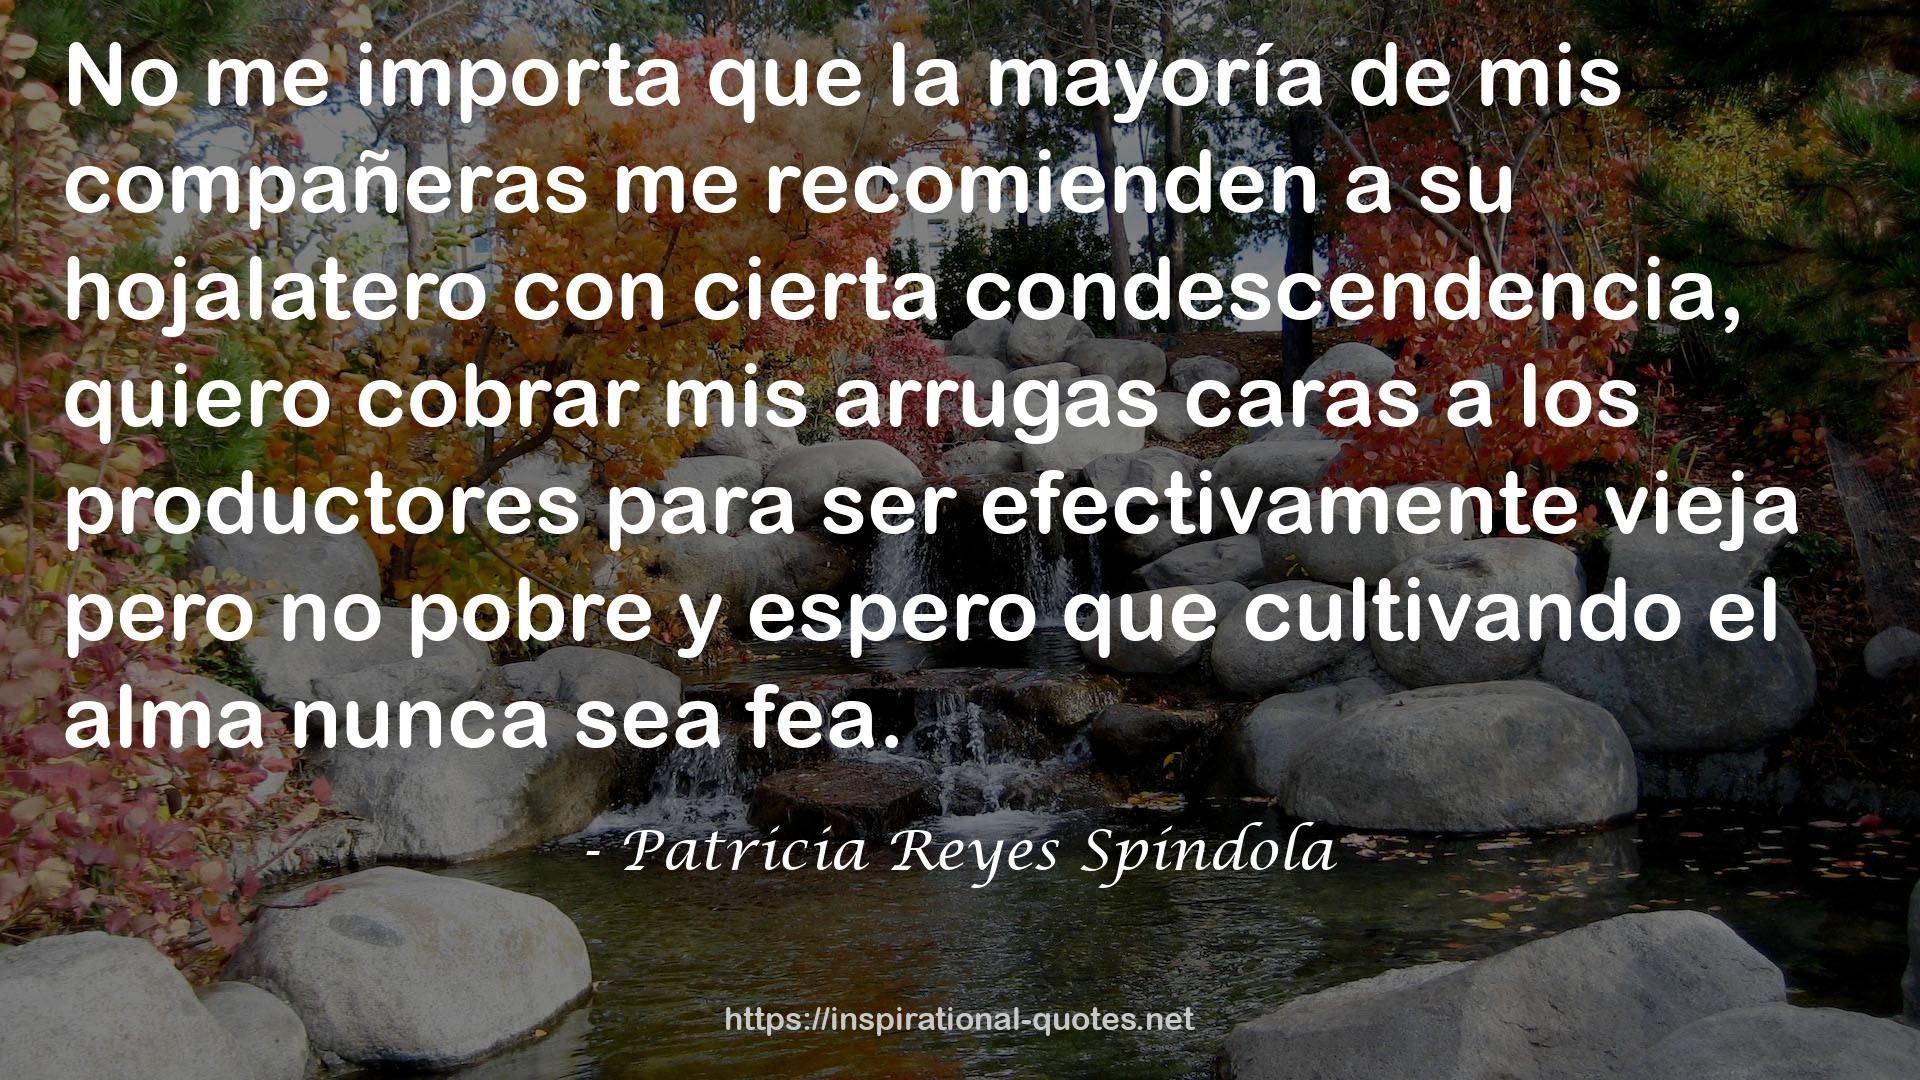 Patricia Reyes Spíndola QUOTES